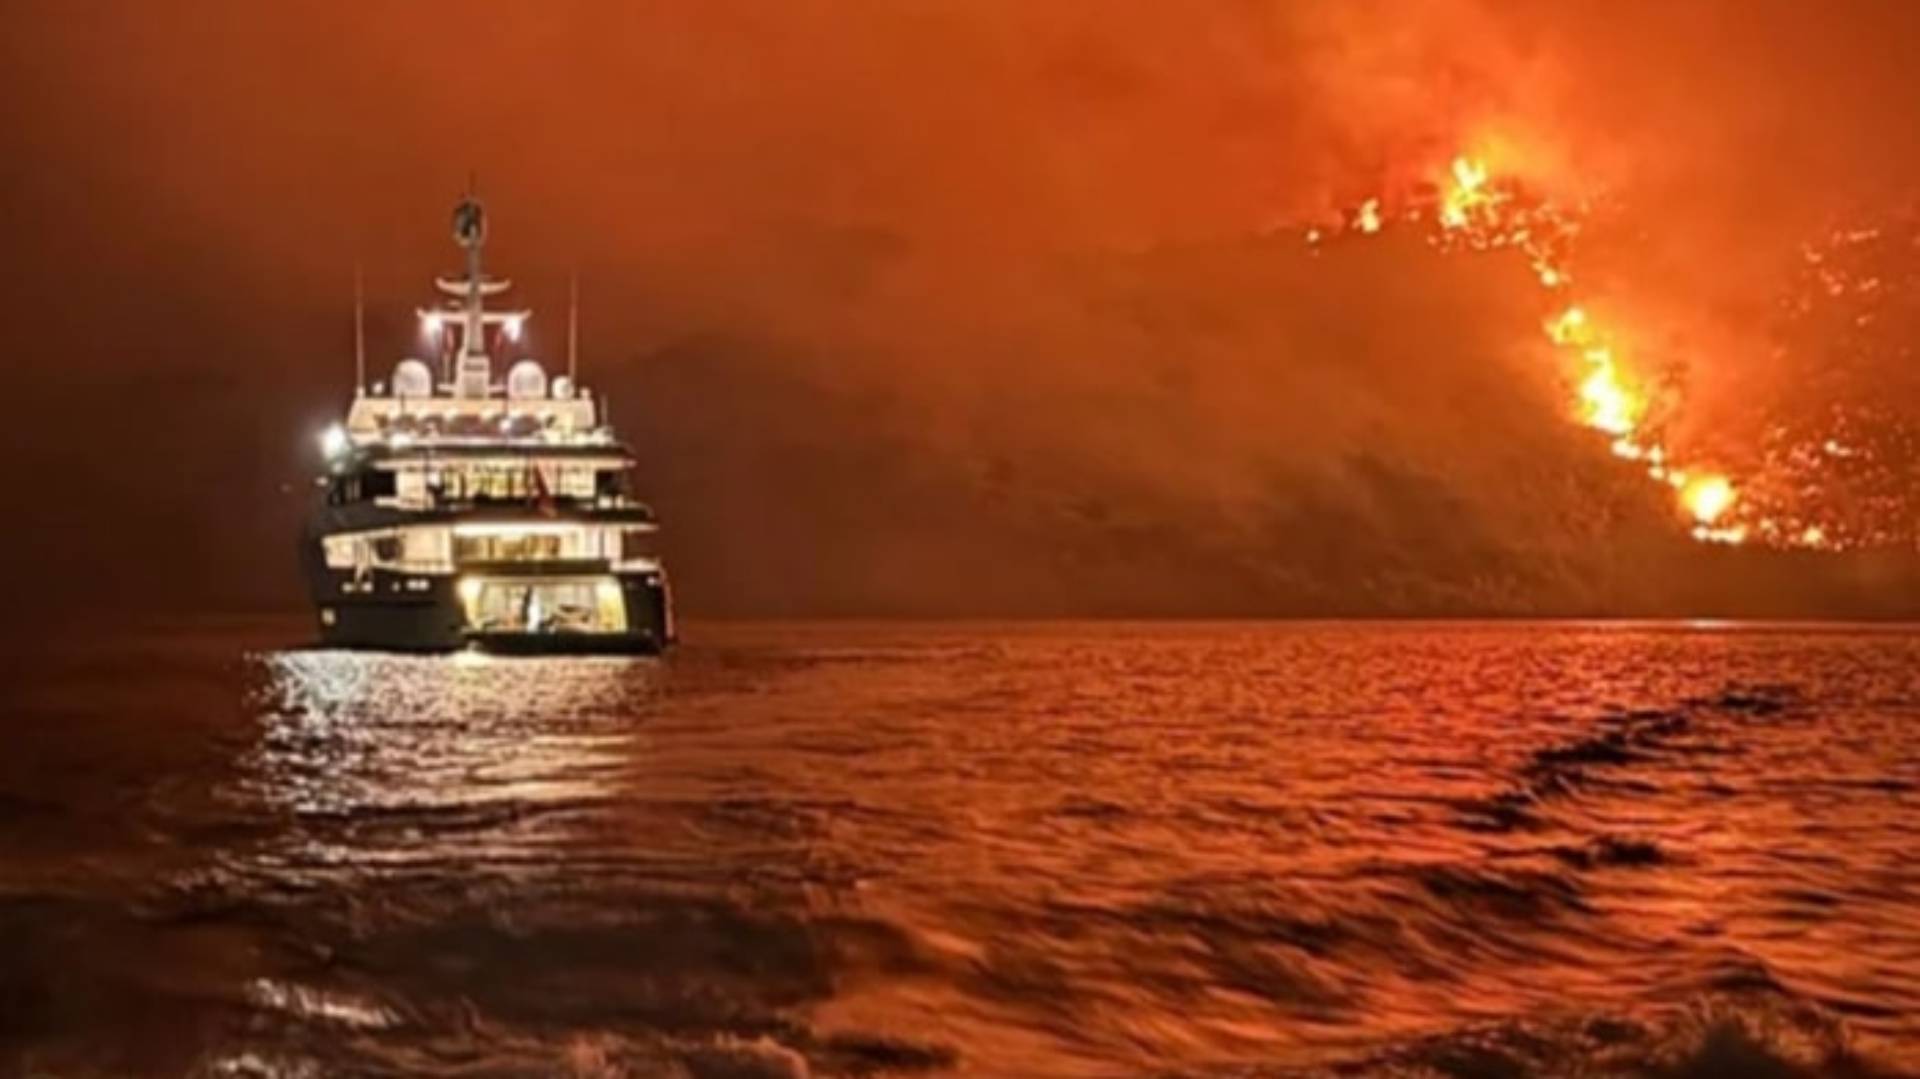 Πυρκαγιά στην Ύδρα: Βρέθηκαν υπολείμματα από 15 κροτίδες στην παραλία